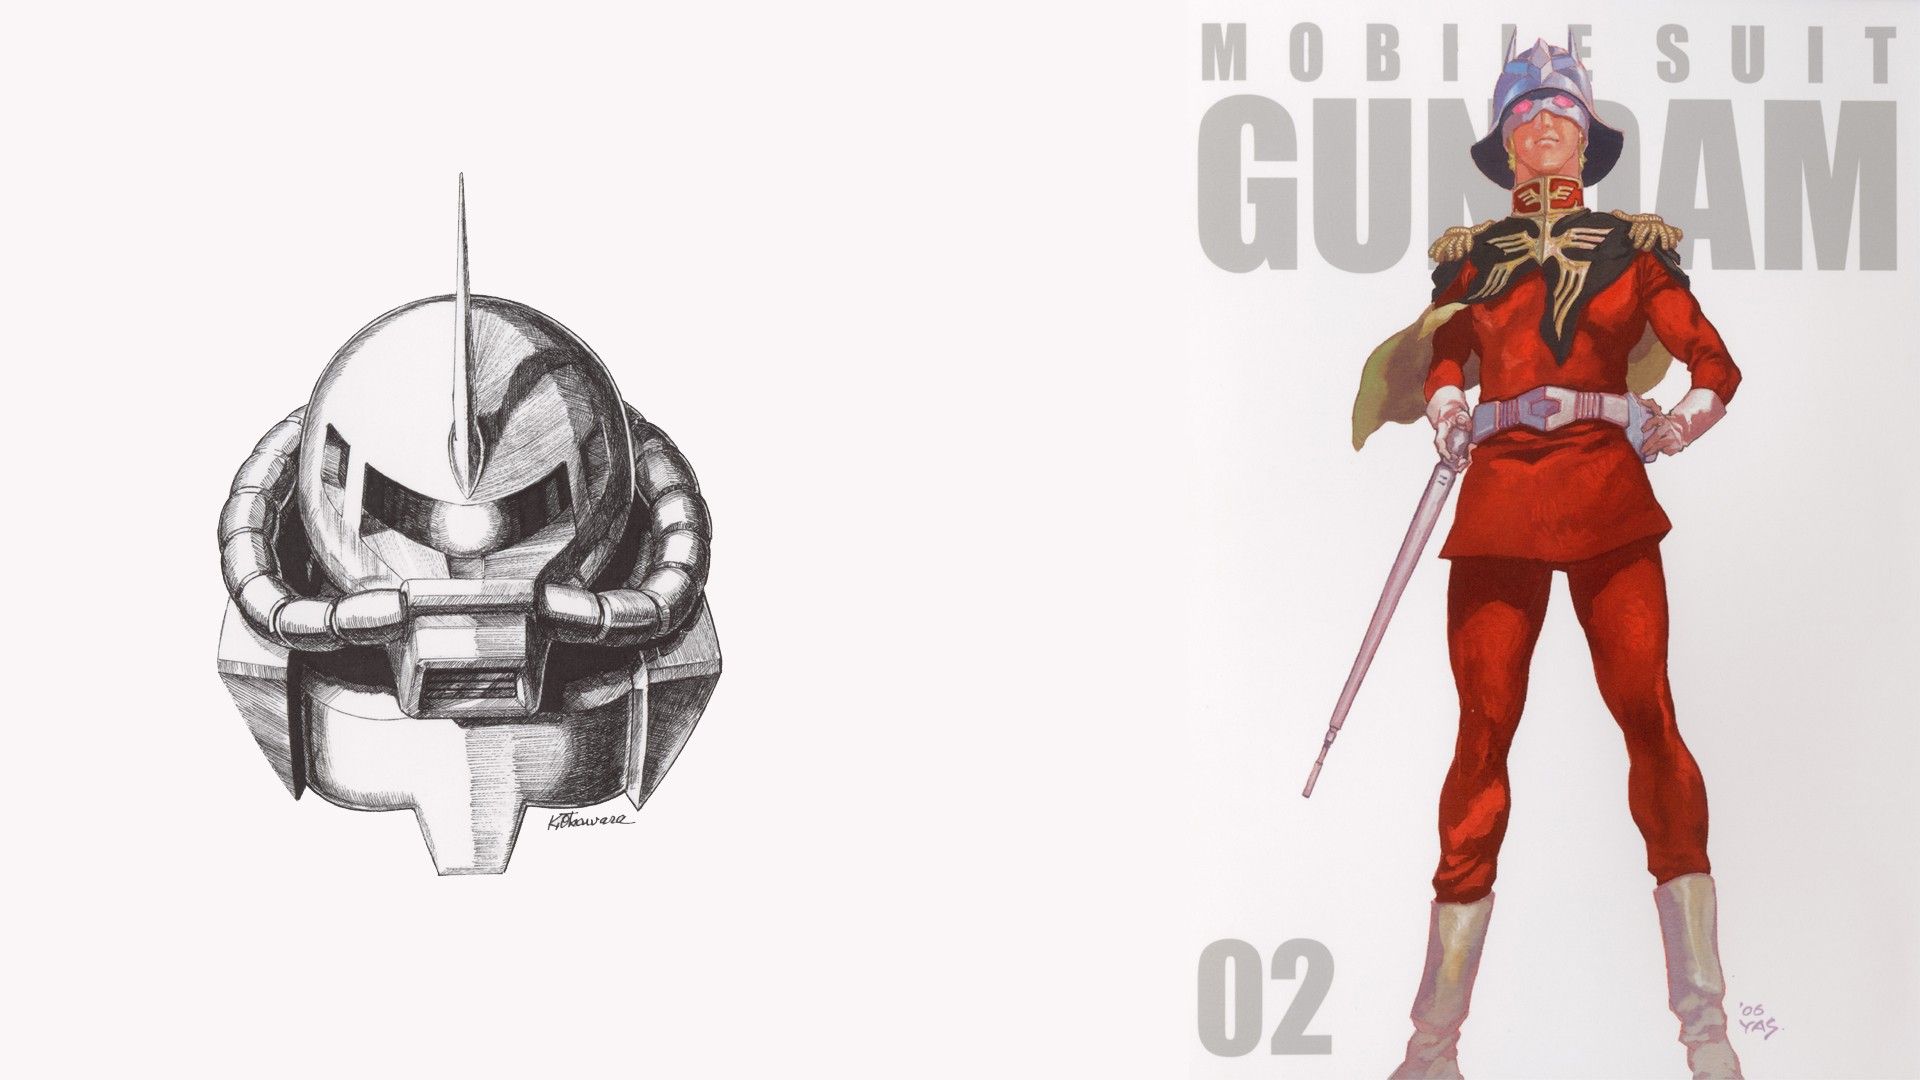 Download HD Wallpaper Of 28909 Gundam, Mobile Suit, Char Aznable, Mobile Suit Gundam. Free Download High Quality And Wid. Gundam Mobile Suit, Mobile Suit, Gundam